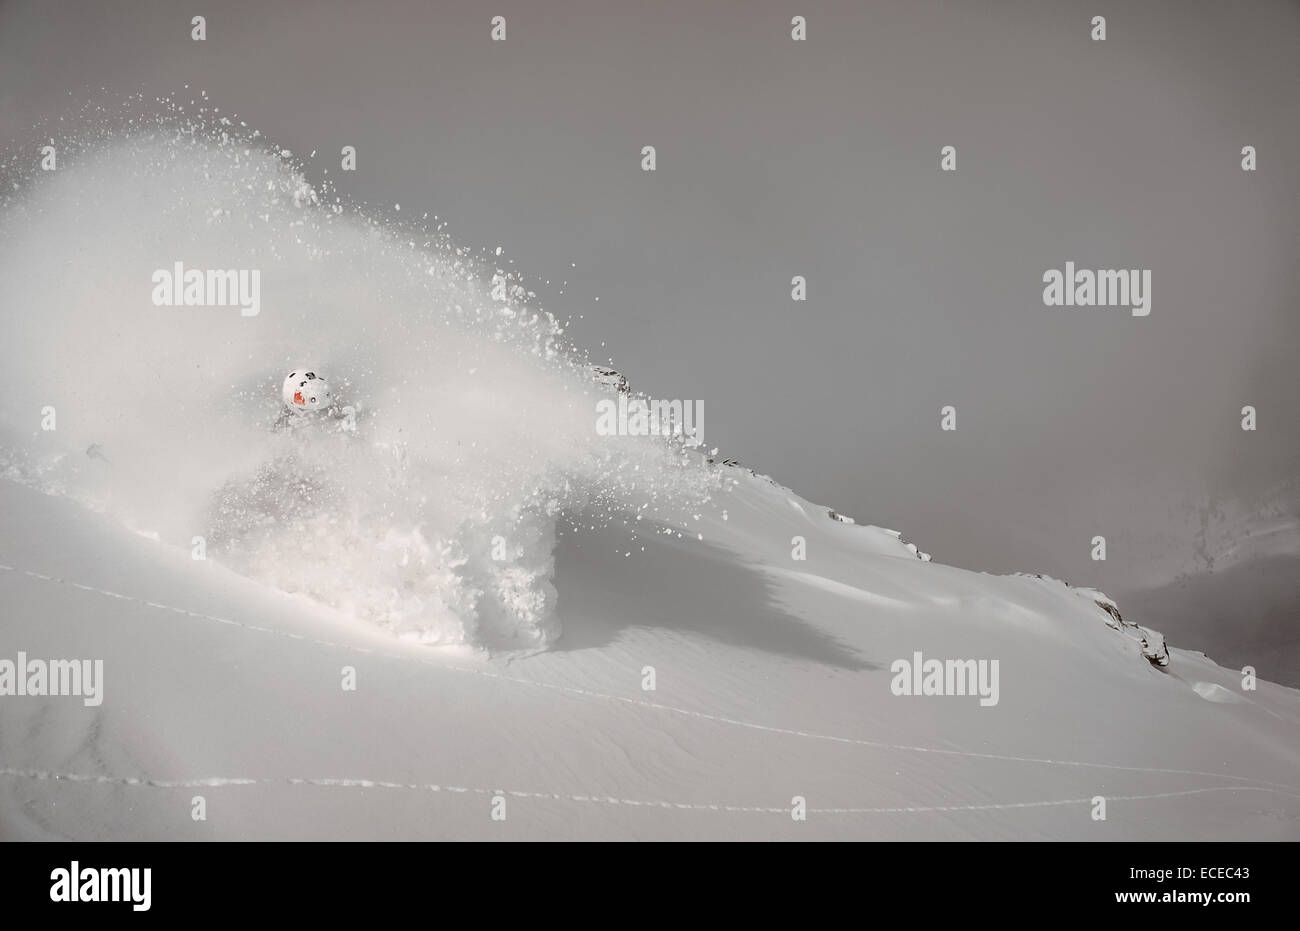 Austria, Salzburg, Gastein, Skier descending slope in cloud of powder snow Stock Photo